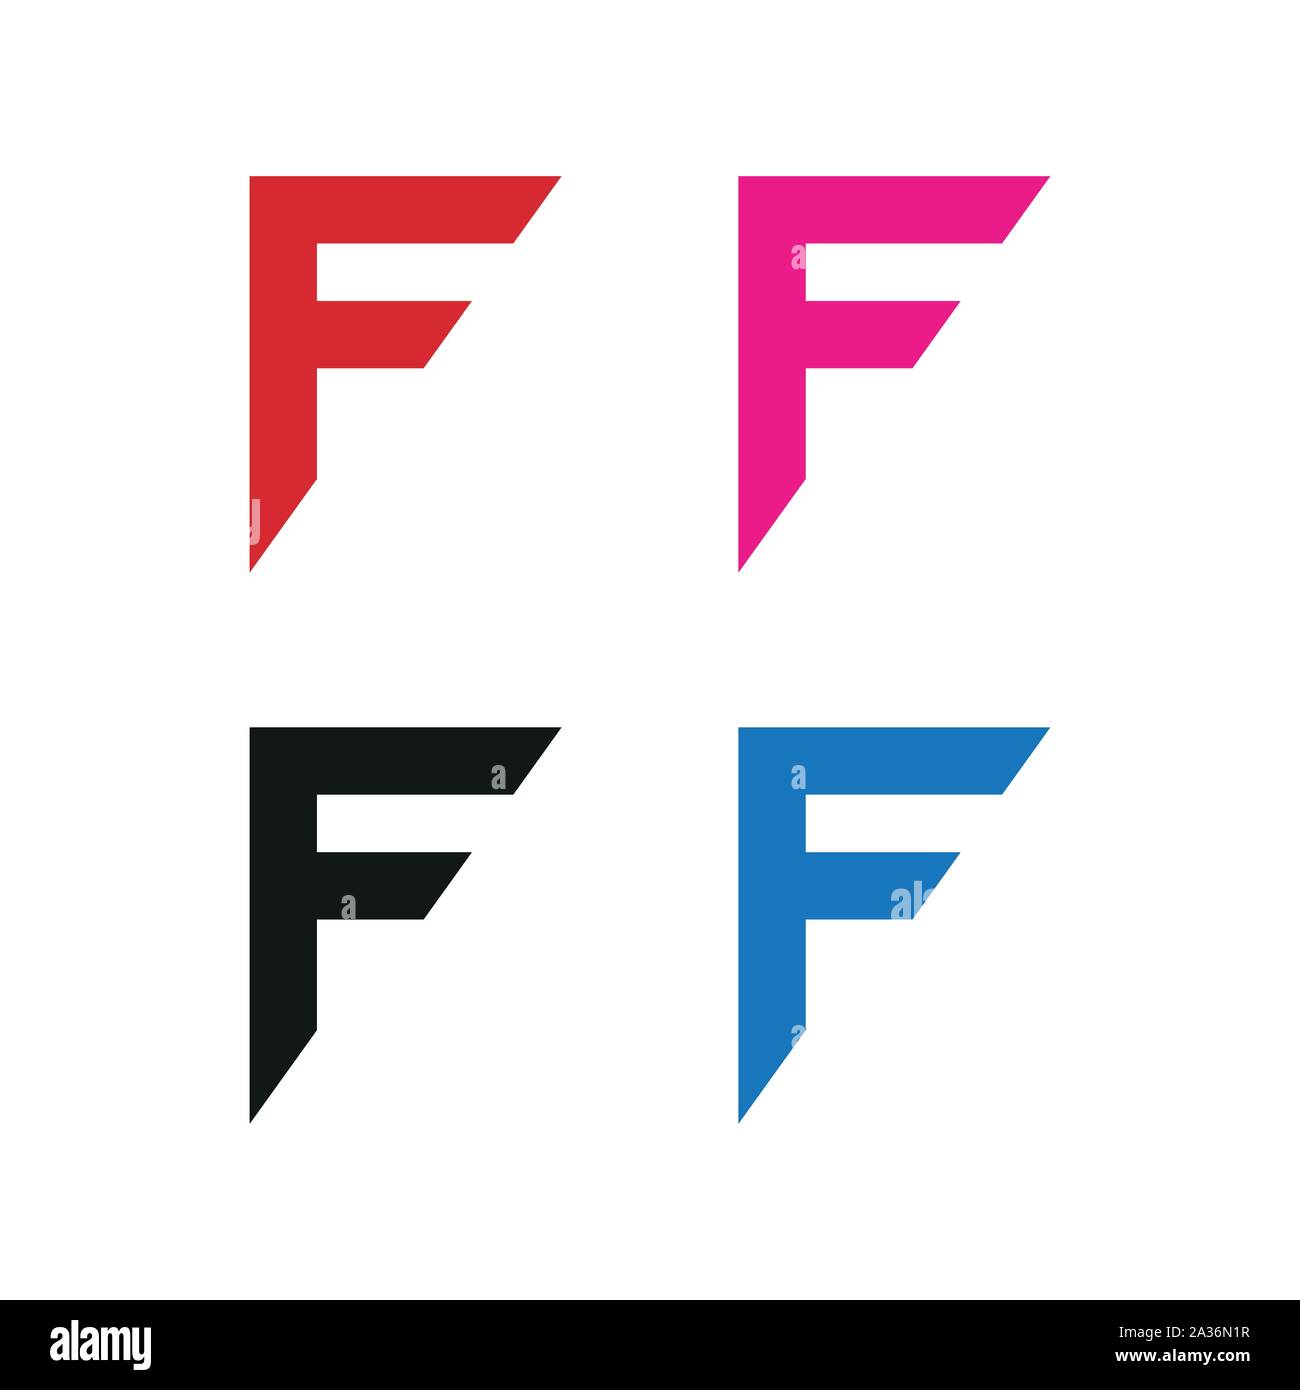 Élégant unique de création artistique symbolique noir, blanc, rouge et bleu sur l'icône de lettre initiale F. logo logo Lettre F - Vector Illustration de Vecteur